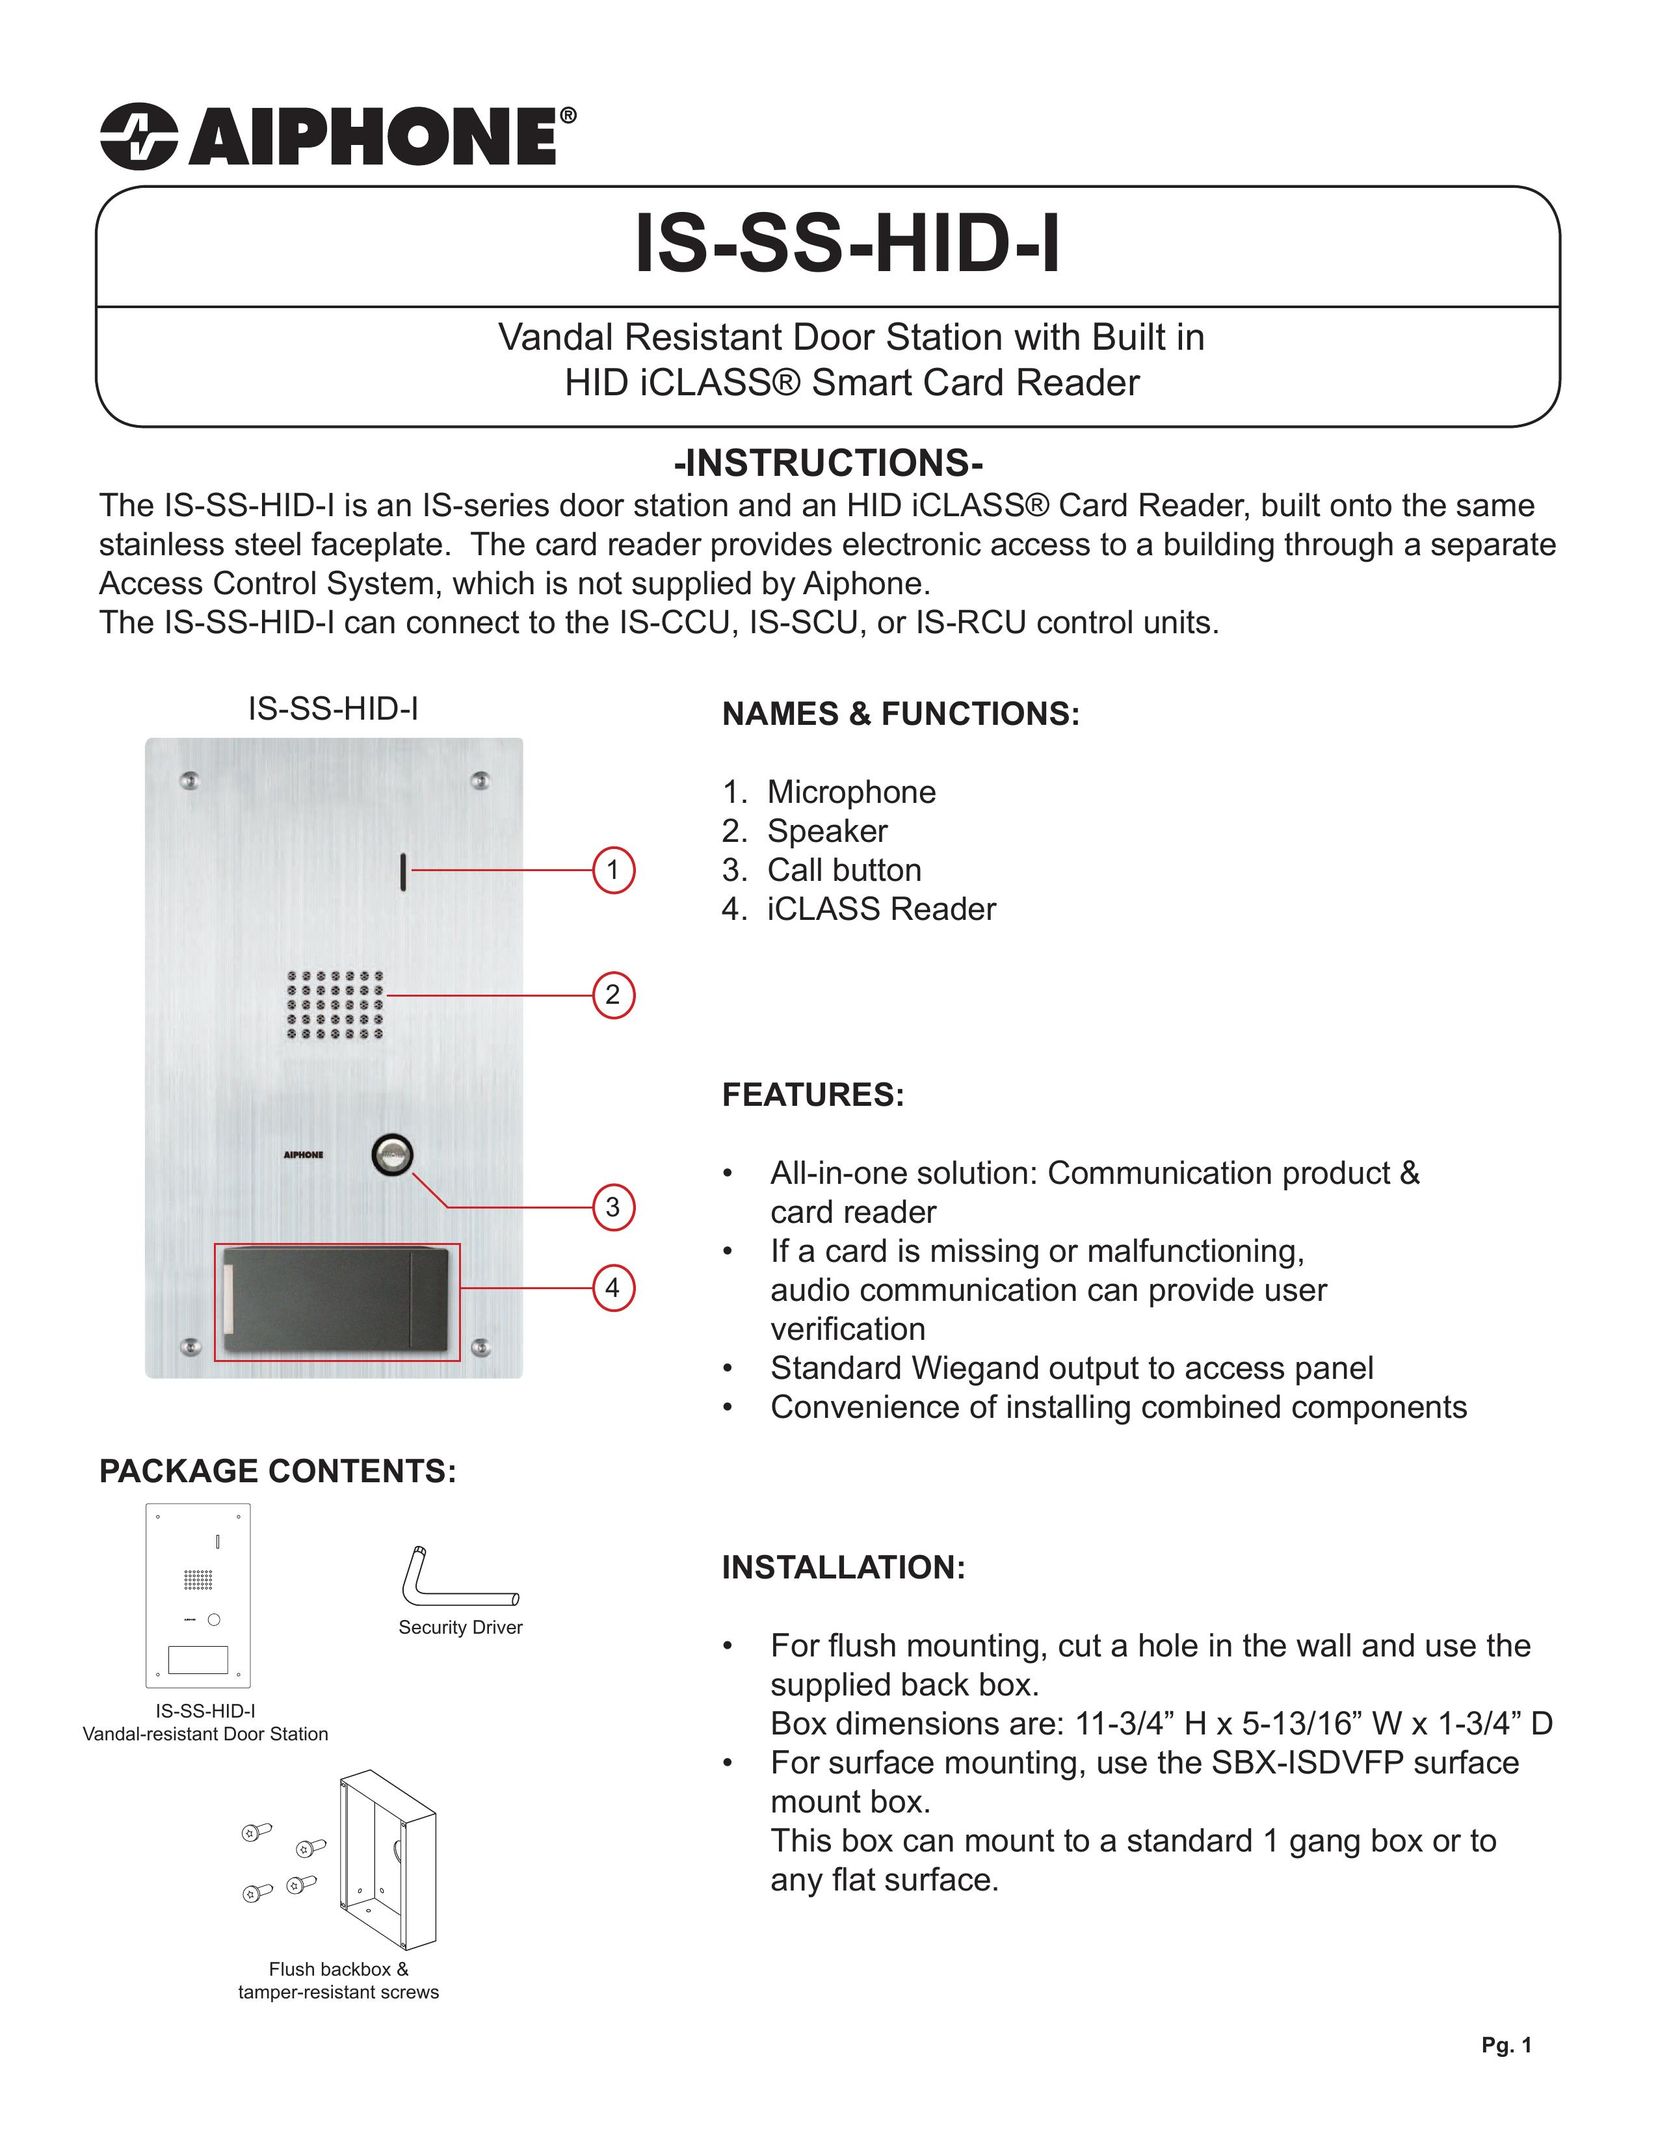 Aiphone IS-SS-HID-I Garage Door Opener User Manual